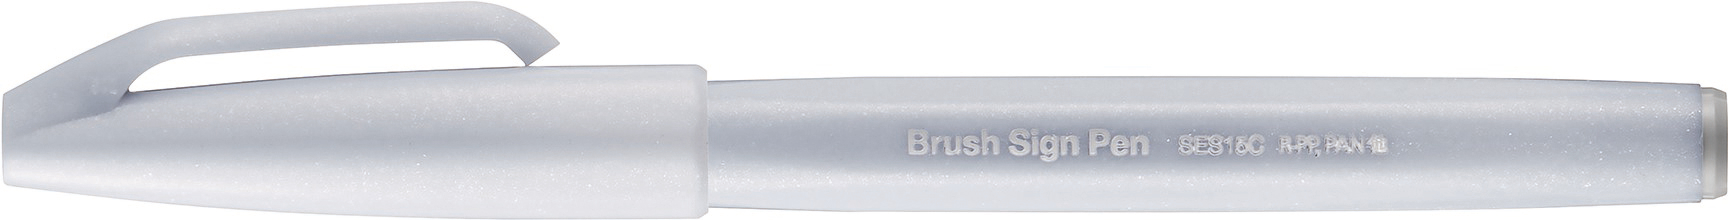 PENTEL Brush Sign Pen SES15C-N2 gris neige